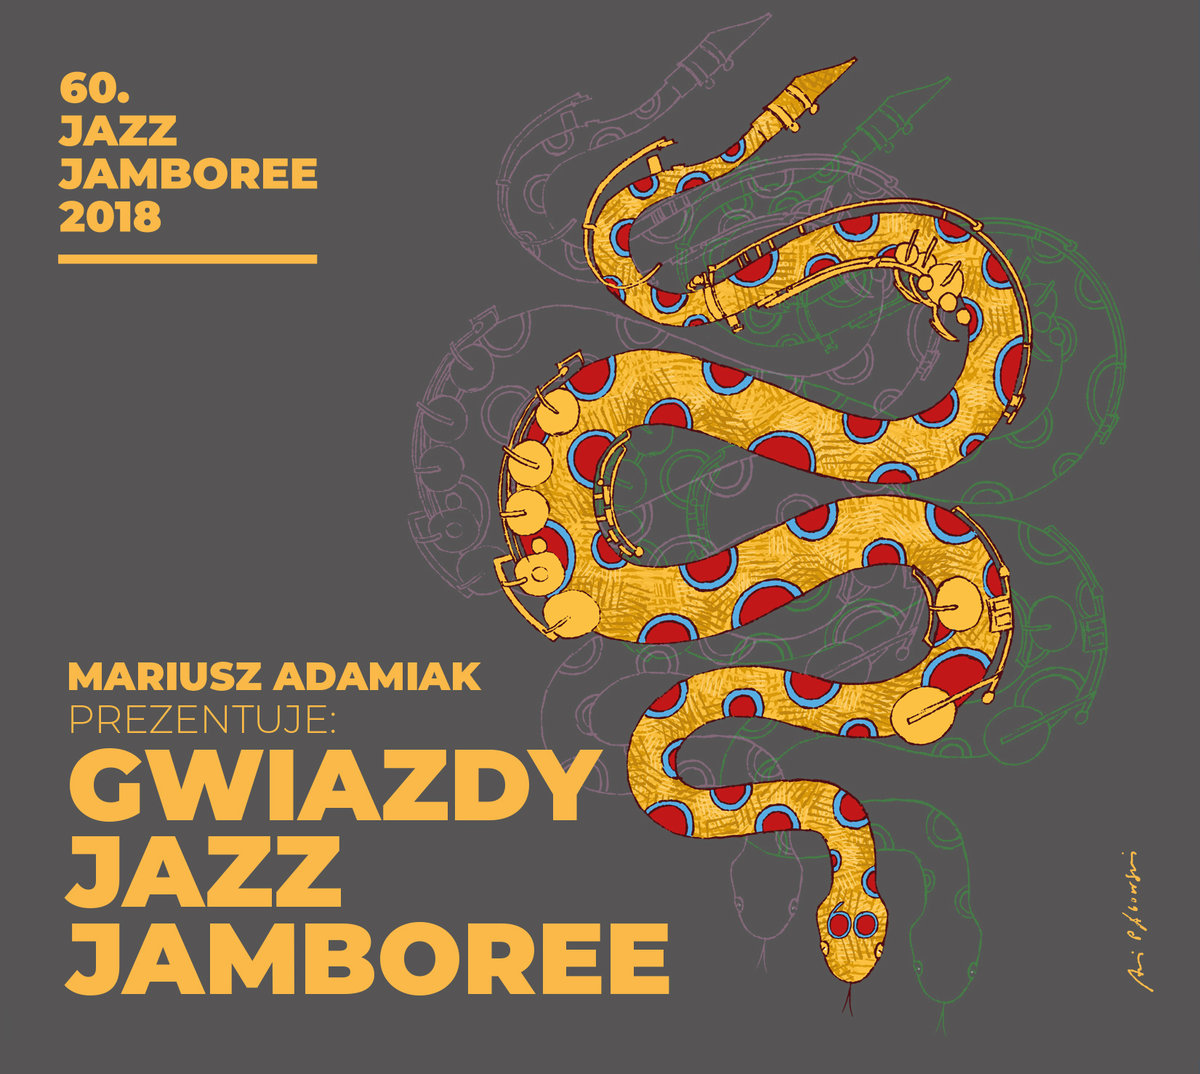 Gwiazdy Jazz Jamboree. 60. Jazz Jamboree 2018 (prezentuje Mariusz Adamiak)